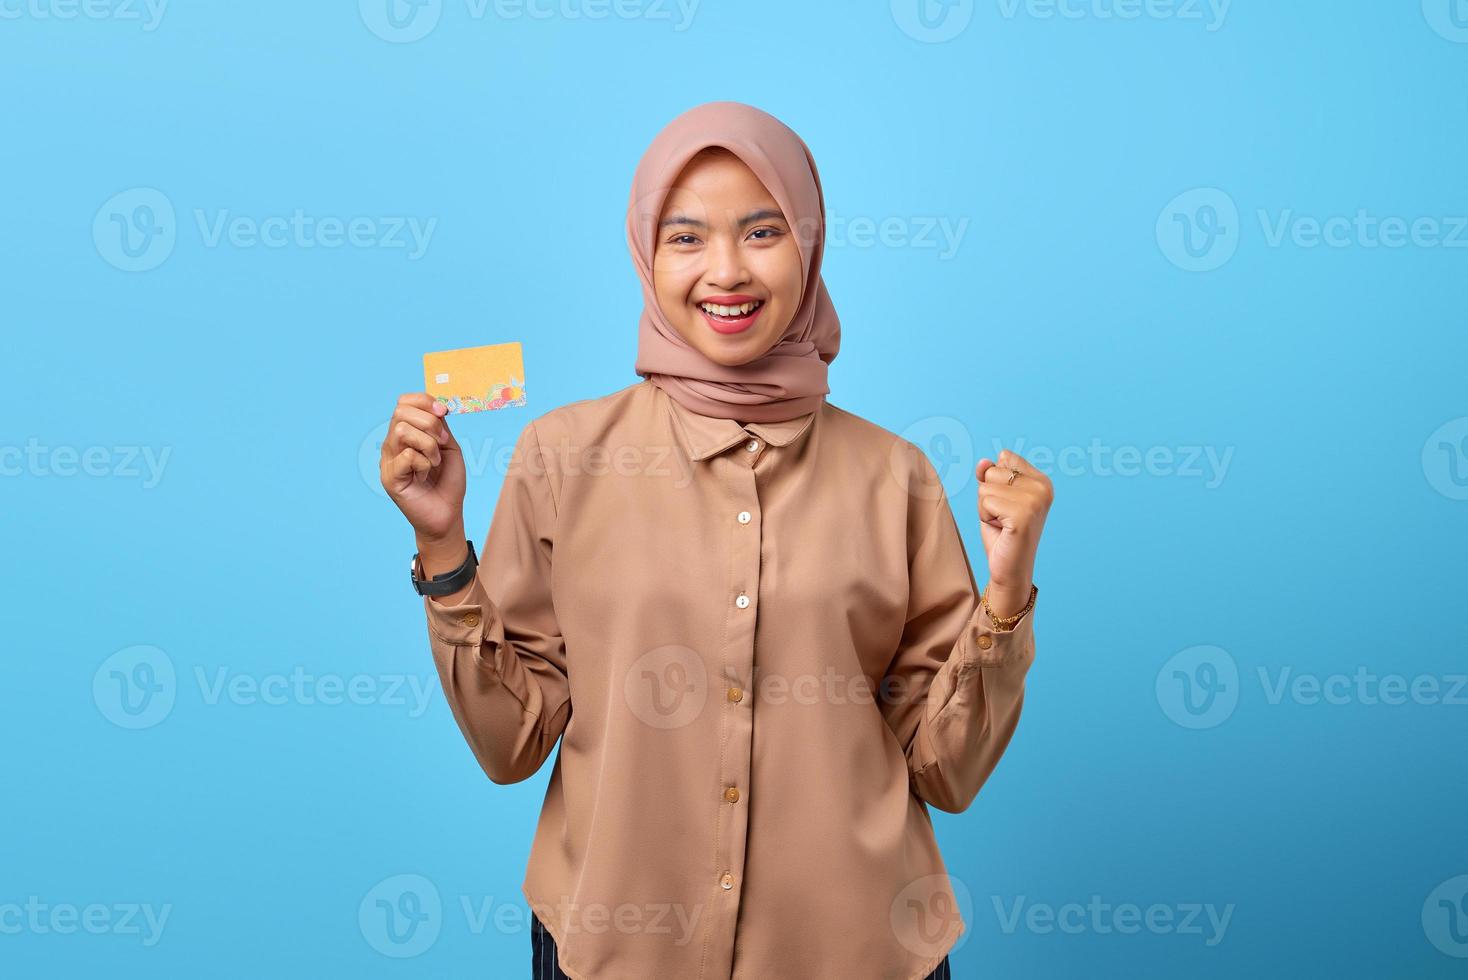 ritratto di giovane donna asiatica allegra eccitata che celebra la fortuna con la carta di credito a portata di mano foto